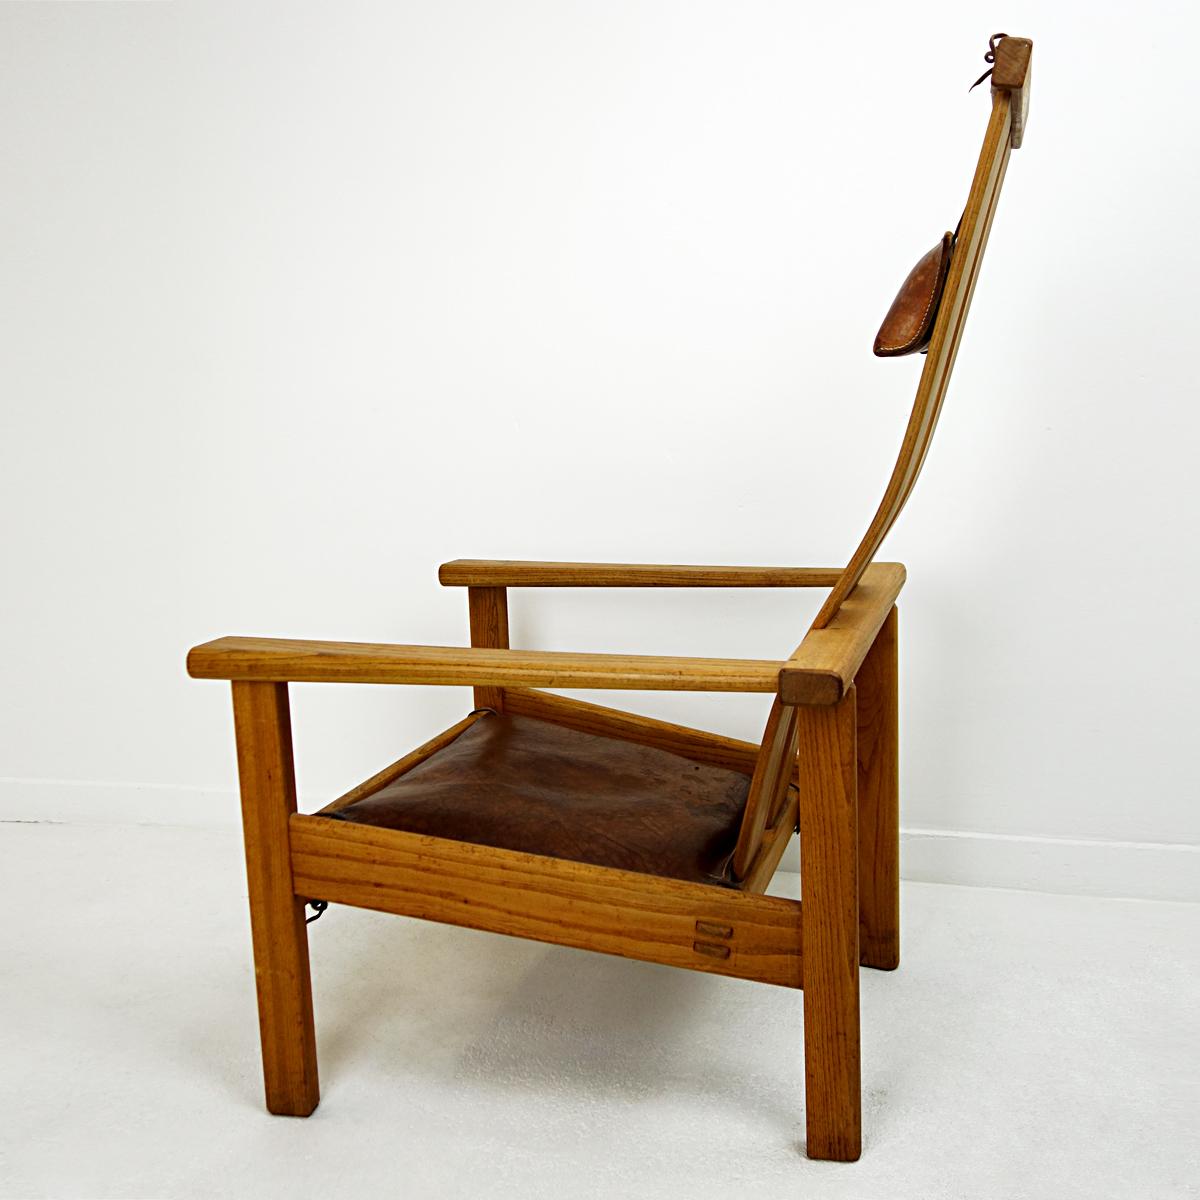 Cette chaise longue est vraiment unique en son genre. Le designer néerlandais Stefan During ne produit ses créations qu'une seule fois. Le dossier et l'assise, joliment courbés de manière organique, reposent sur un cadre robuste. Les coussins de